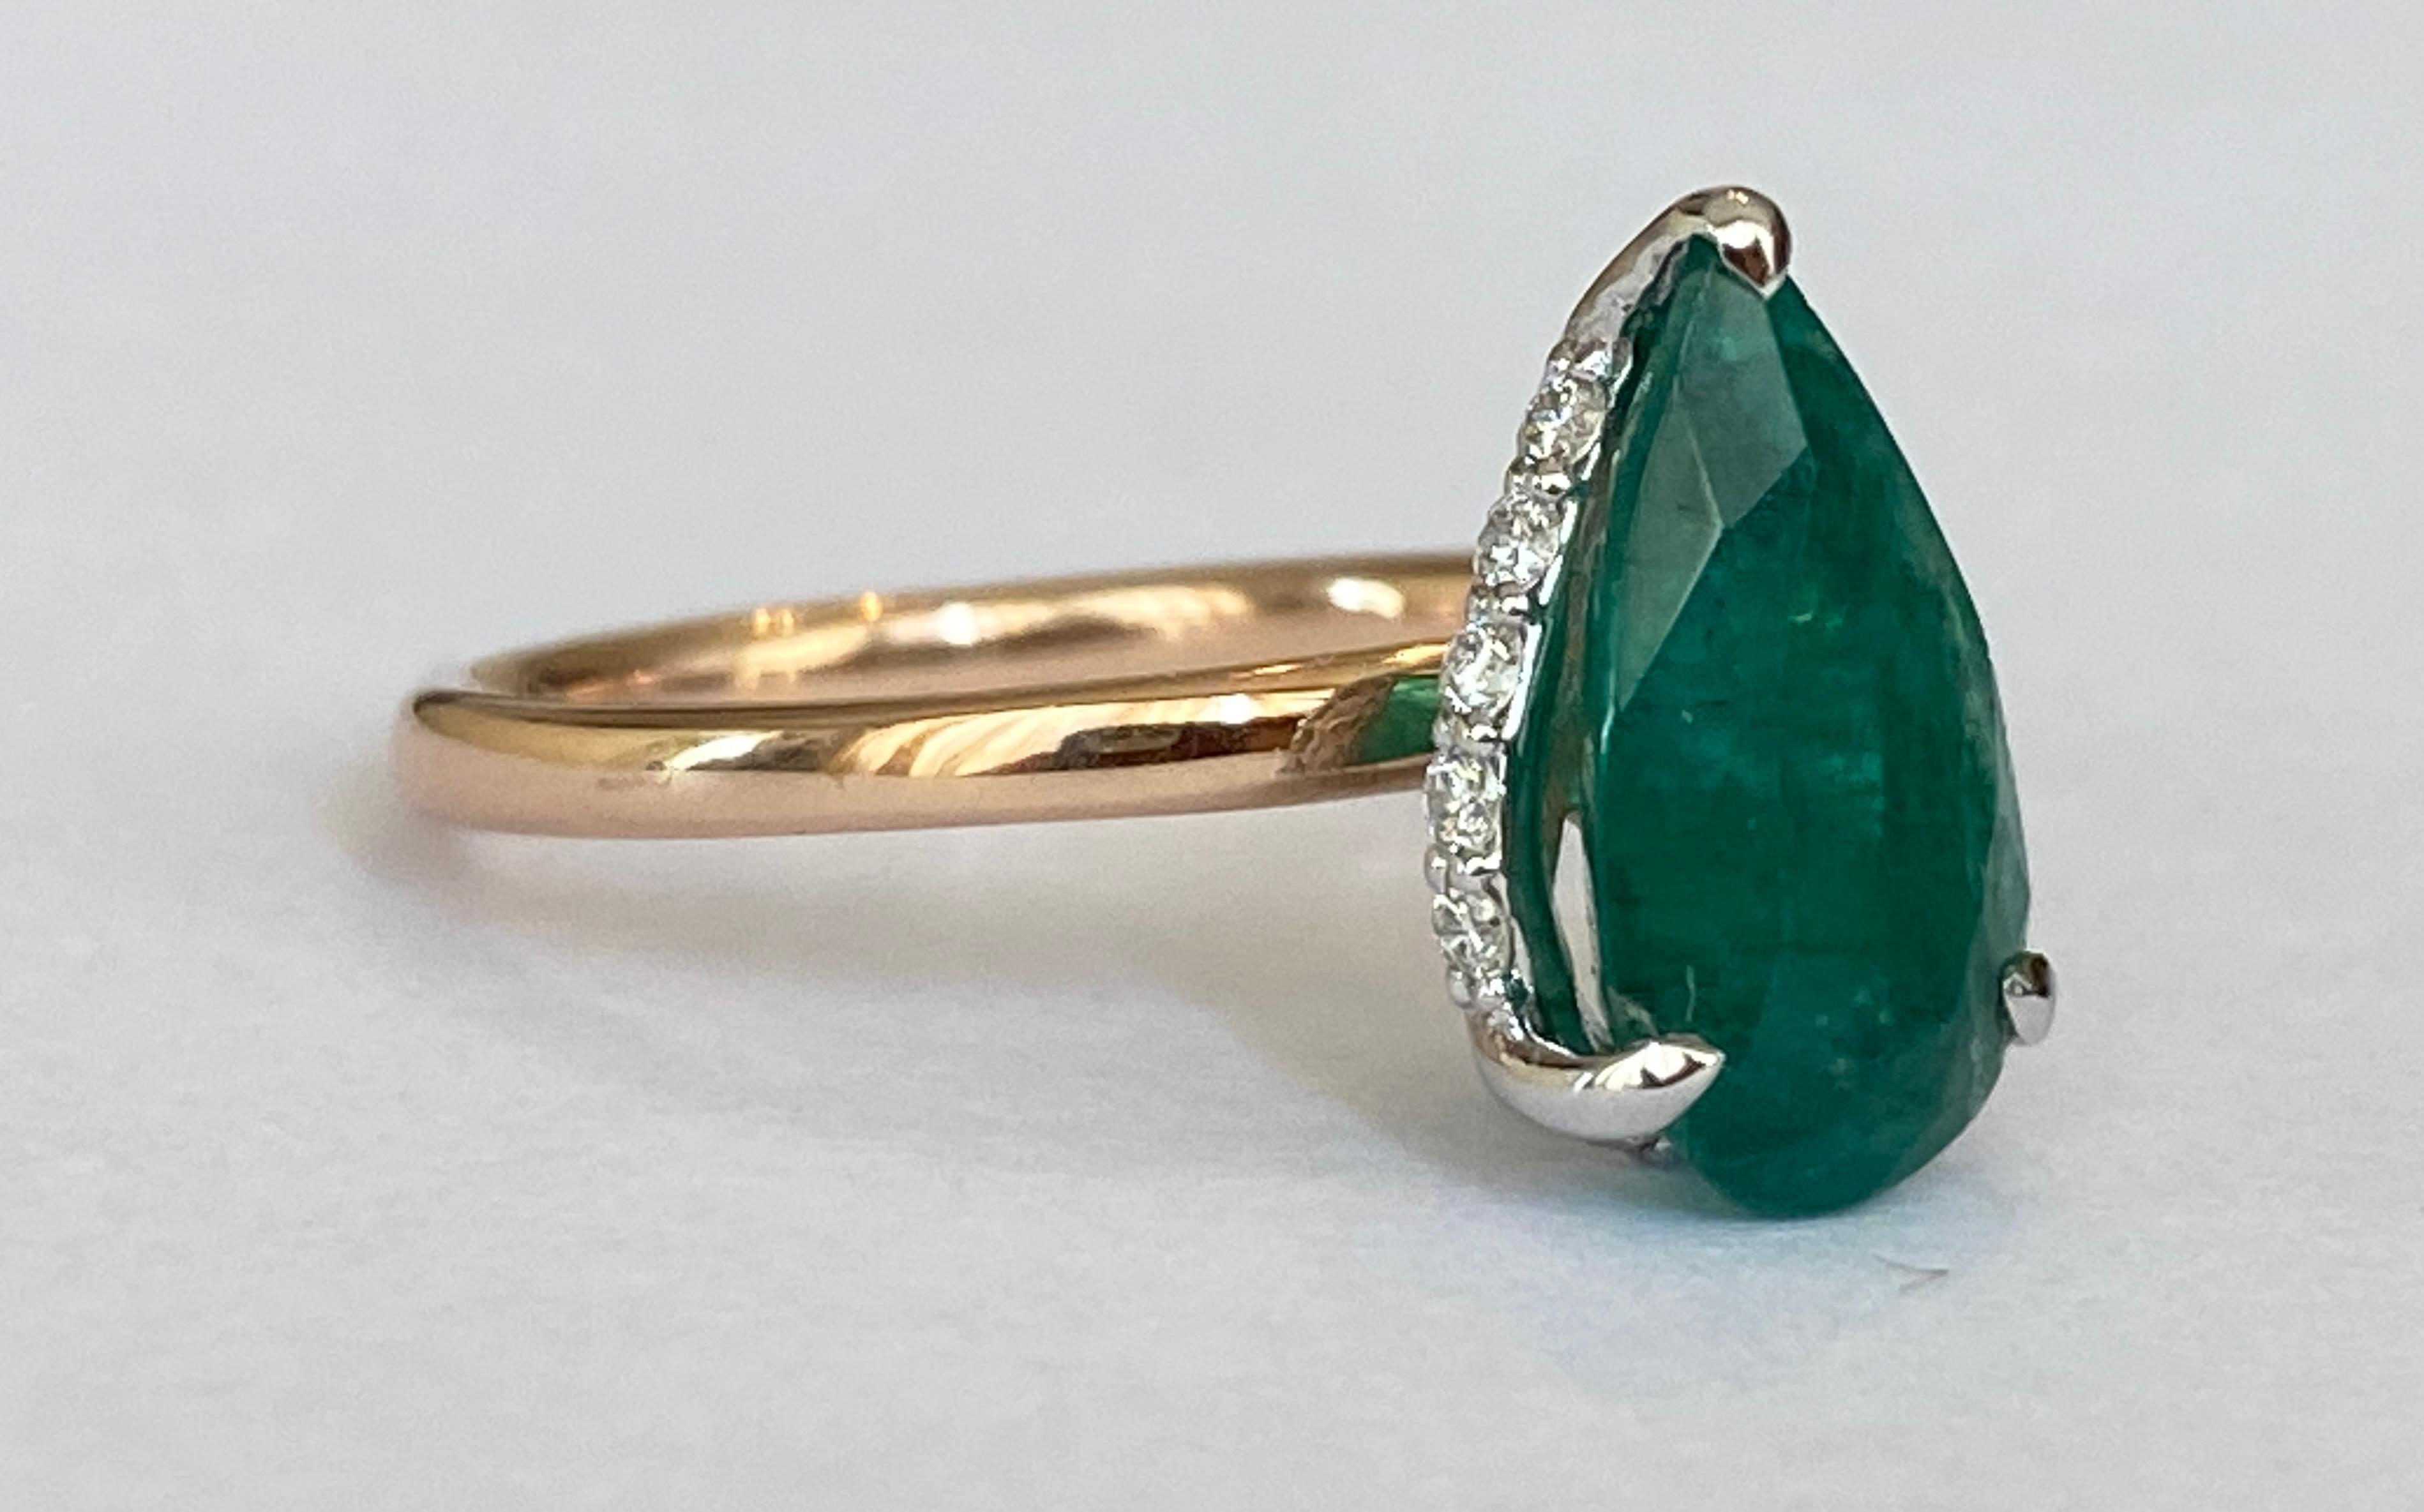 Angeboten in neuem Zustand, ein 18 Karat handgefertigten Bi-Color-Ring mit einer natürlichen Birne gemischt geschnitten Smaragd von 3,00 crt in der Mitte, umgeben von 13 Stücke von Brillanten insgesamt etwa 0,16 crt von Qualität F / G / VS. Die